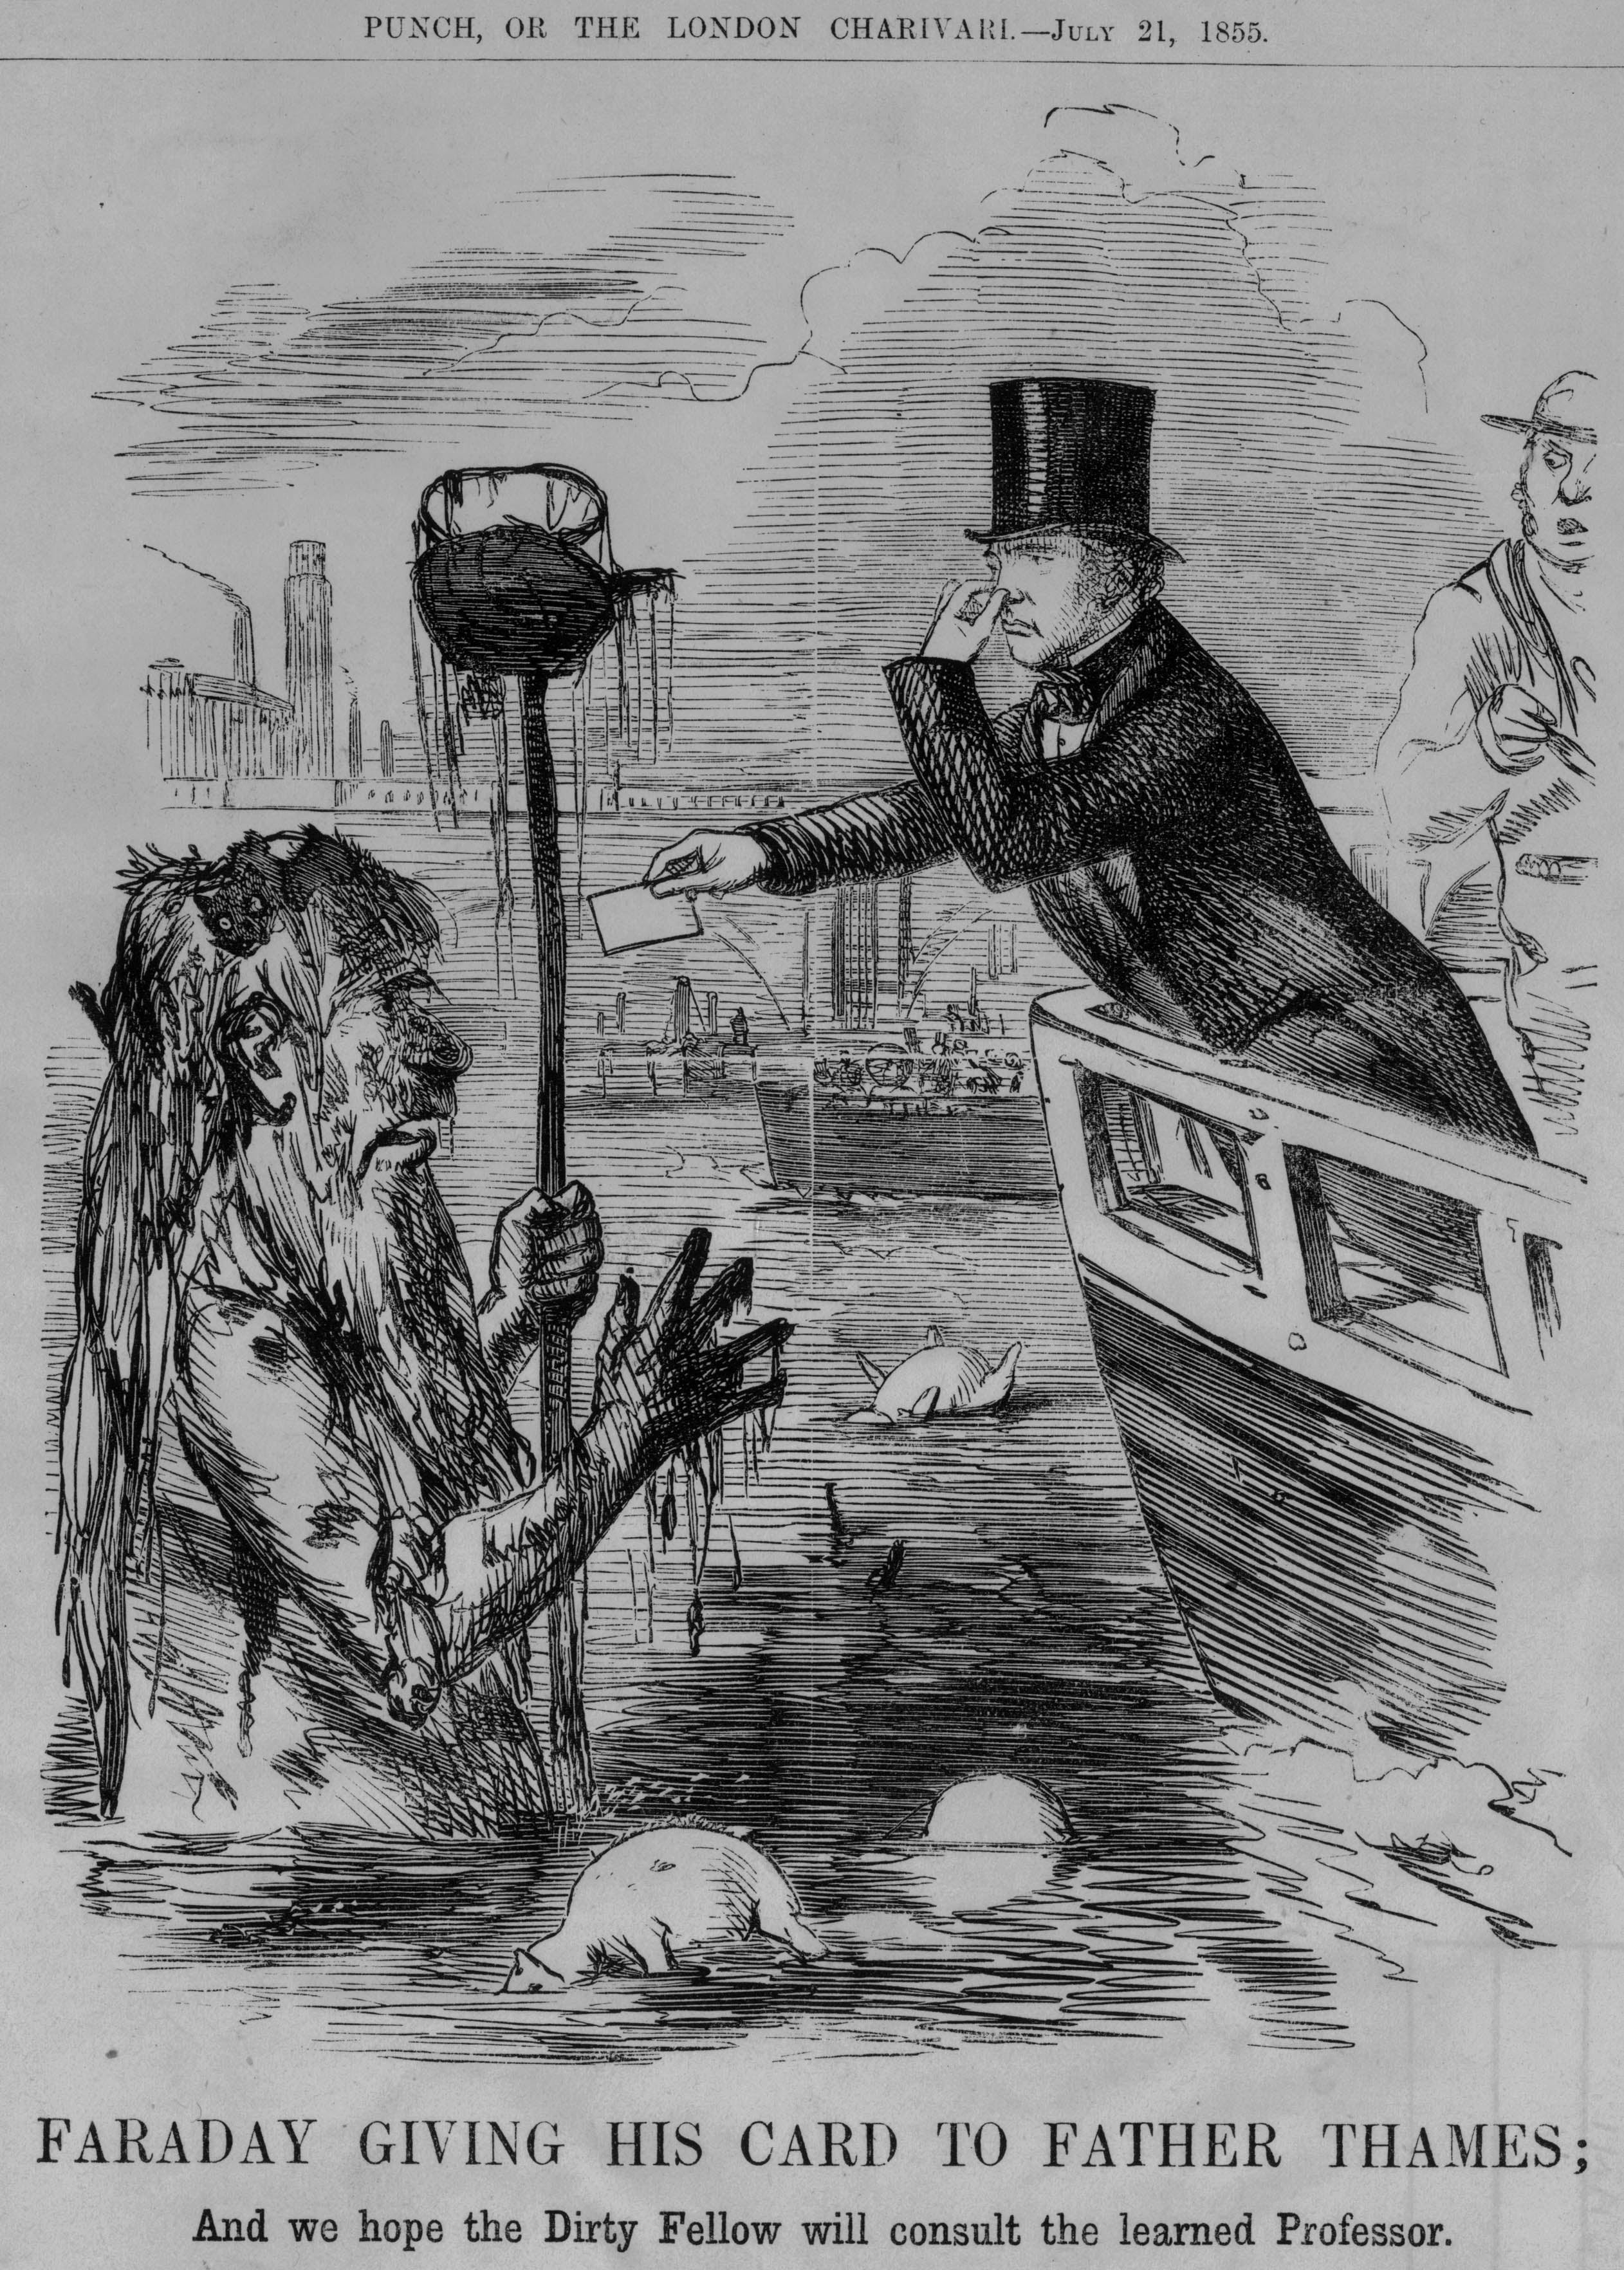 Una caricatura del Punch de julio de 1855 que muestra al físico inglés Michael Faraday tapándose la nariz mientras le entrega al “Padre Támesis” una tarjeta de presentación